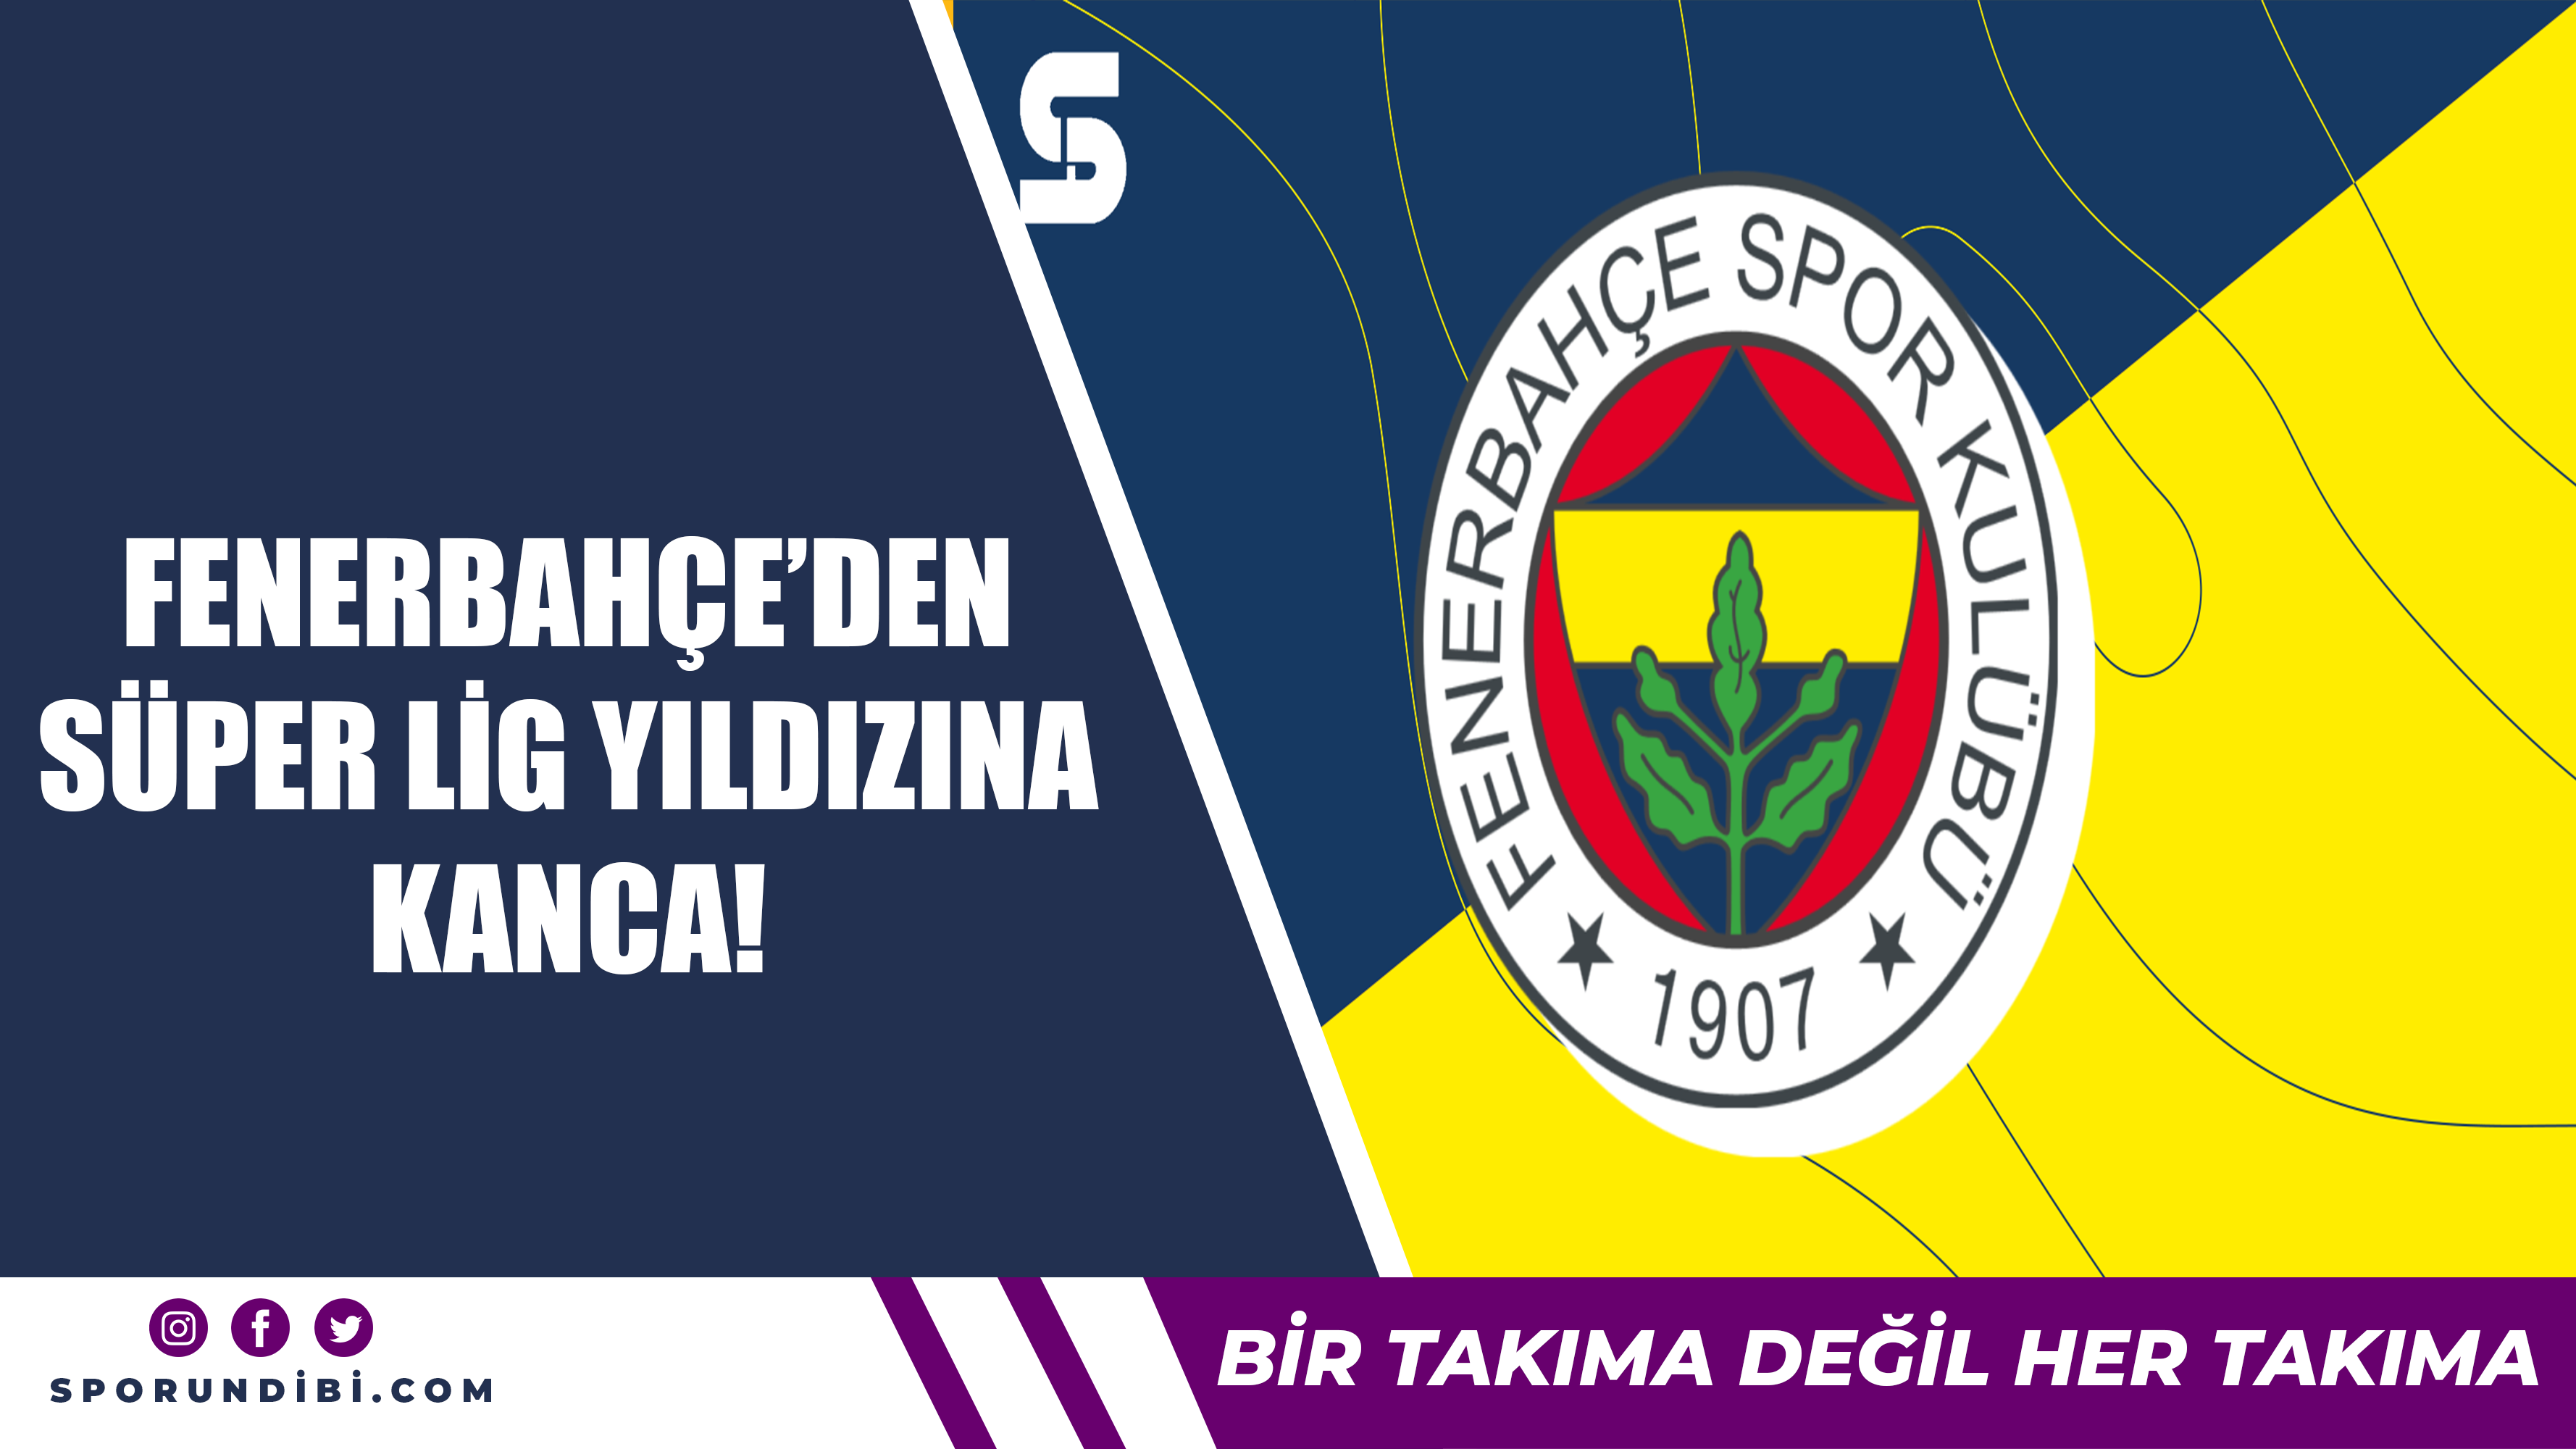 Fenerbahçe'den Süper Lig'in yıldızına kanca!